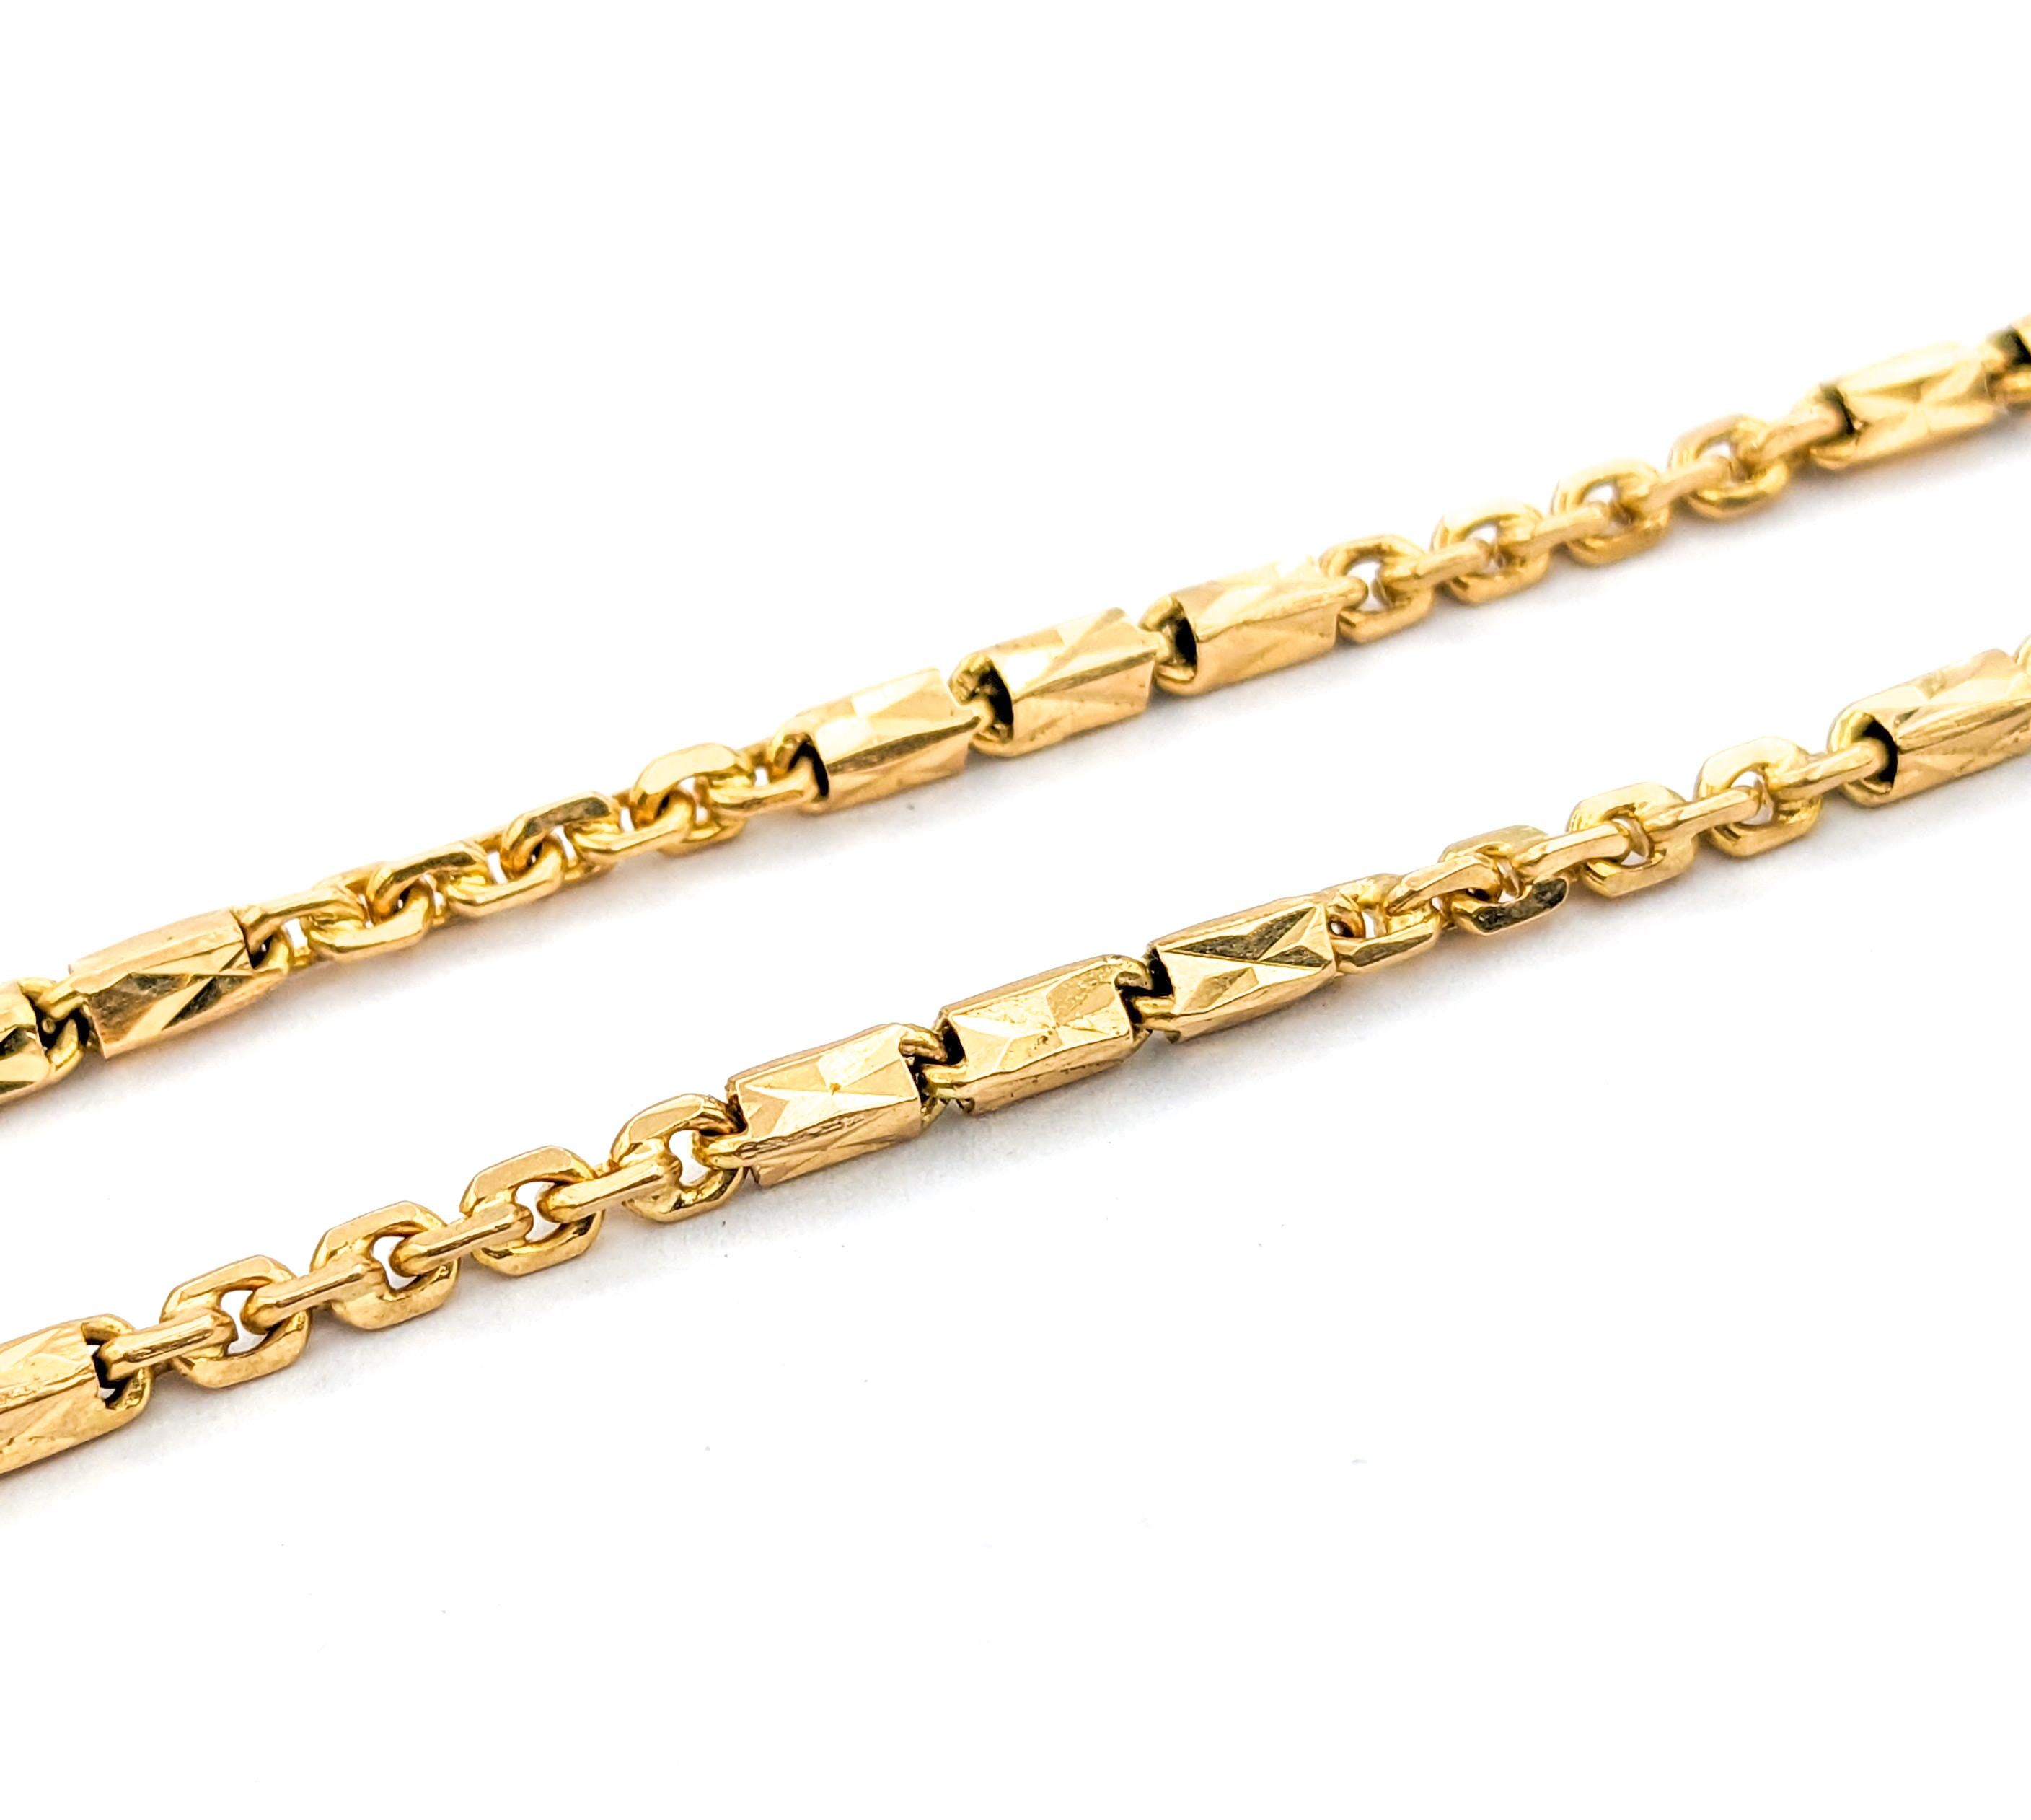 Barrel Link Design Halskette In Gelbgold

Diese exquisite goldene Halskette aus 18-karätigem Gelbgold besticht durch ihr elegantes Ketten- und Gliederdesign. Mit einer großzügigen Länge von 28 Zentimetern und einer Breite von 2,2 mm fällt diese